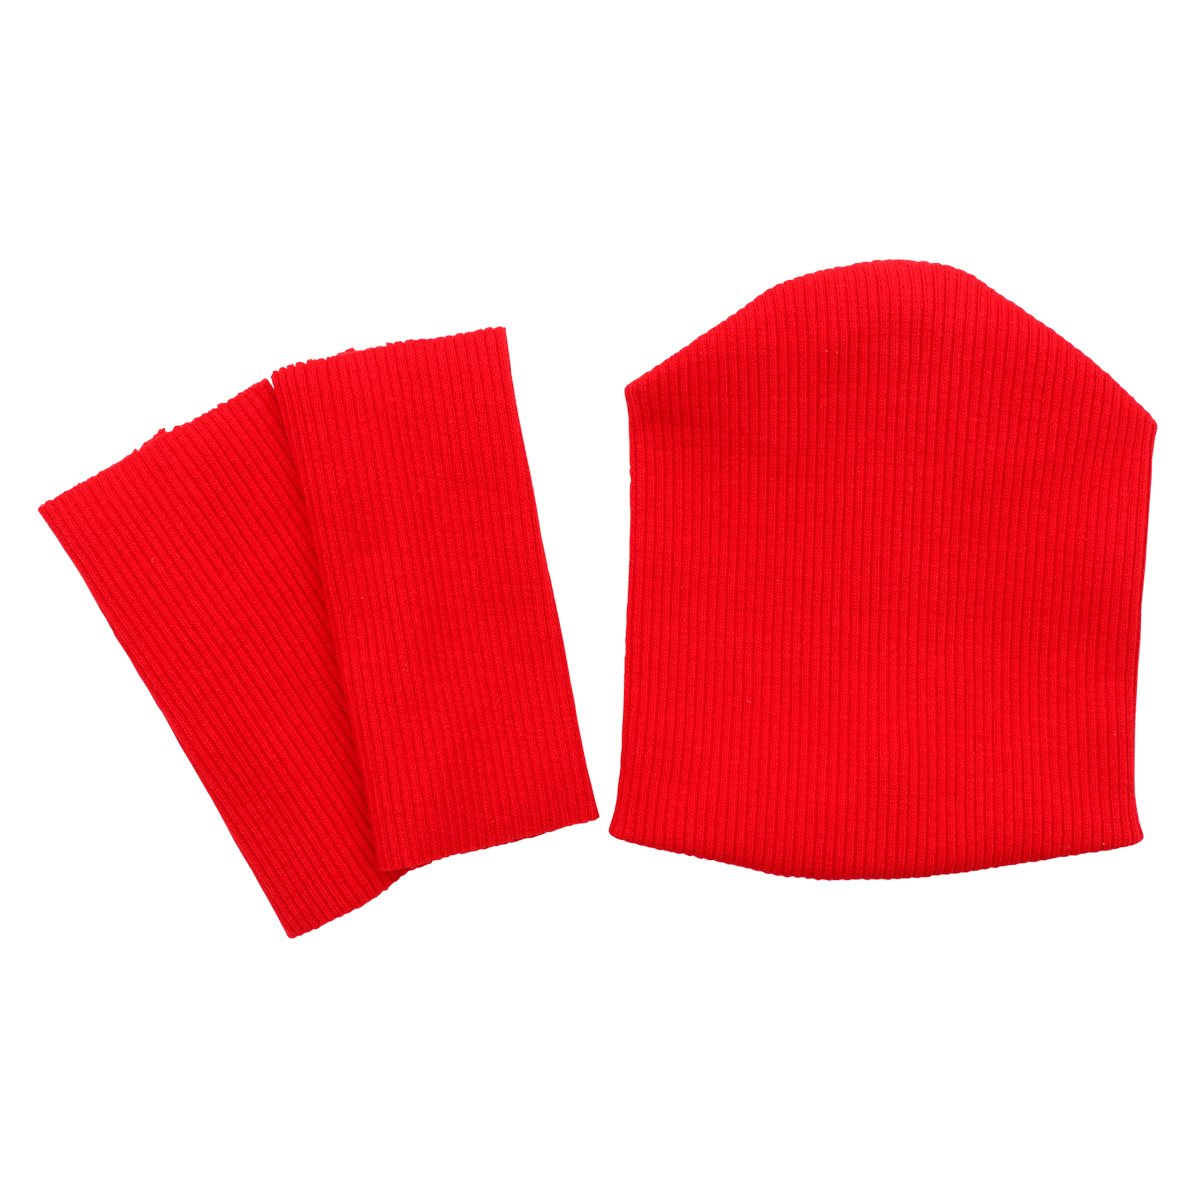 28875 Комплект одежды для игрушек красный: шапка (9,5*10 см), гетры (3*8 см) 28875 комплект одежды для игрушек красный шапка 9 5 10 см гетры 3 8 см